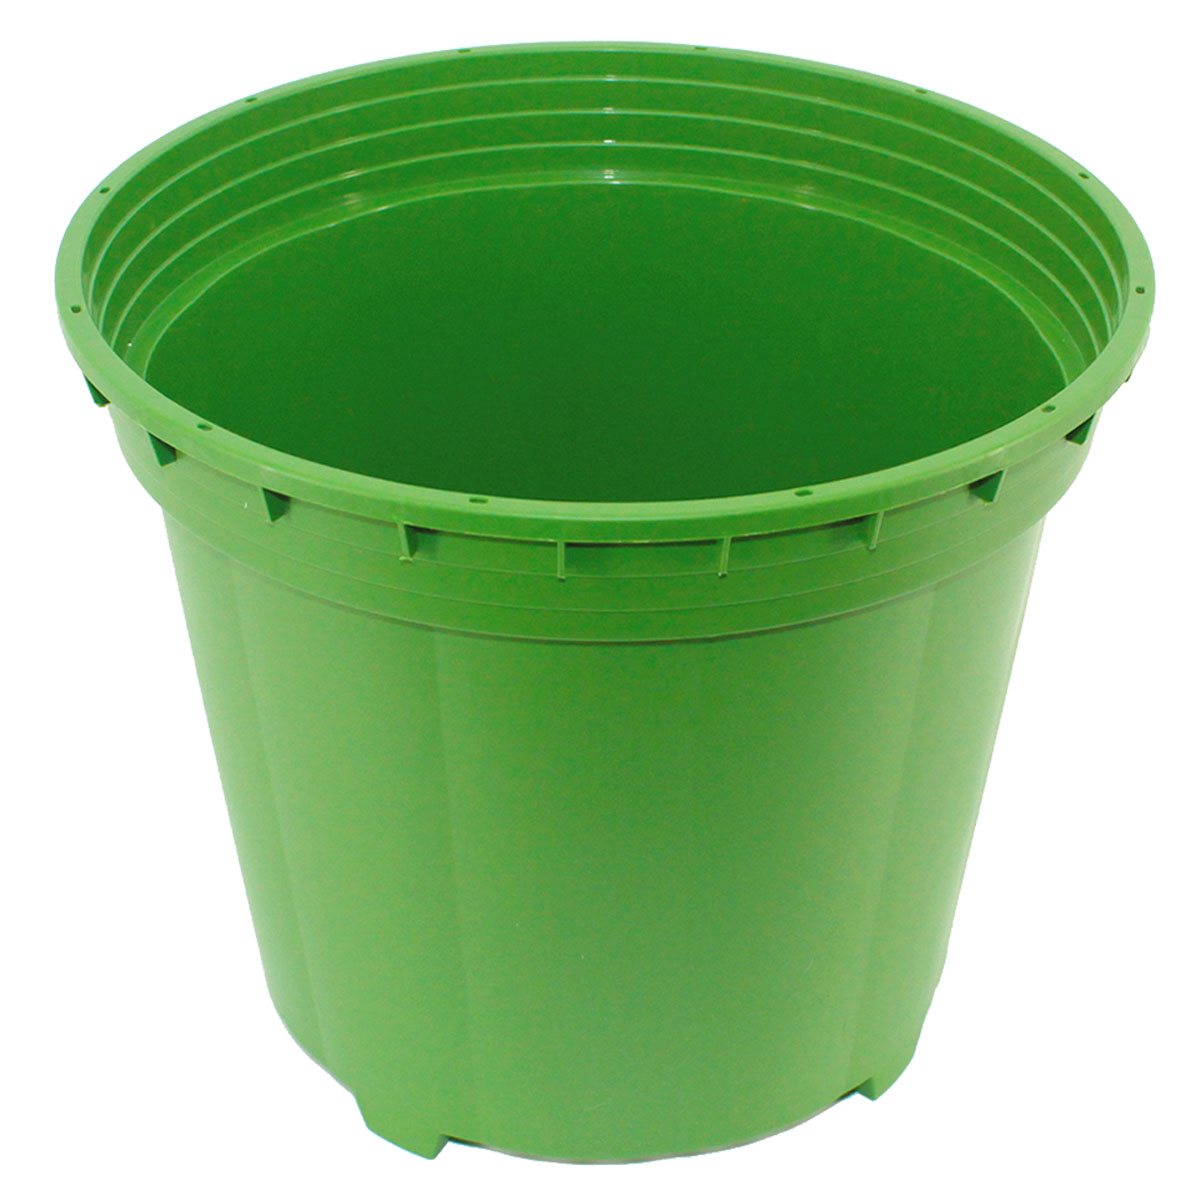 Product Image:FloraFlex Pot Pro Seau de 3 gallons